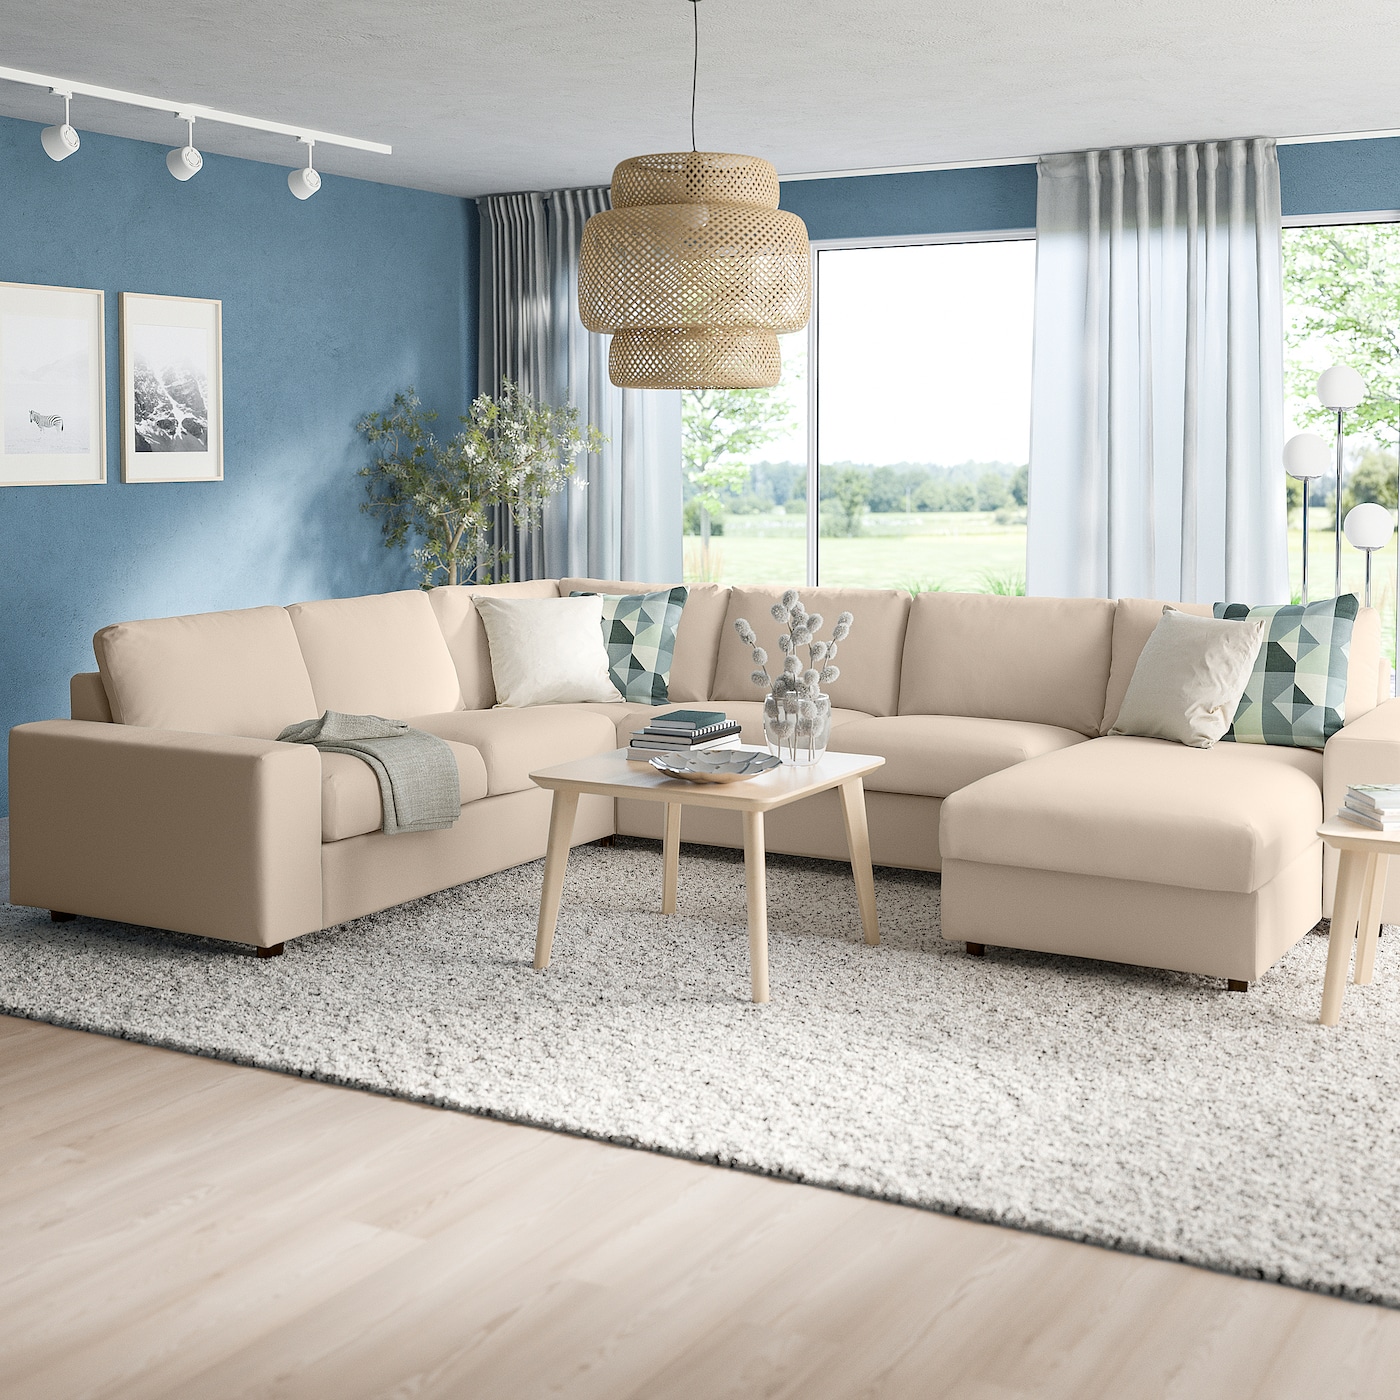 ВИМЛЕ Диван угловой, 5-местный. диван+диван, с широкими подлокотниками/Халларп бежевый VIMLE IKEA